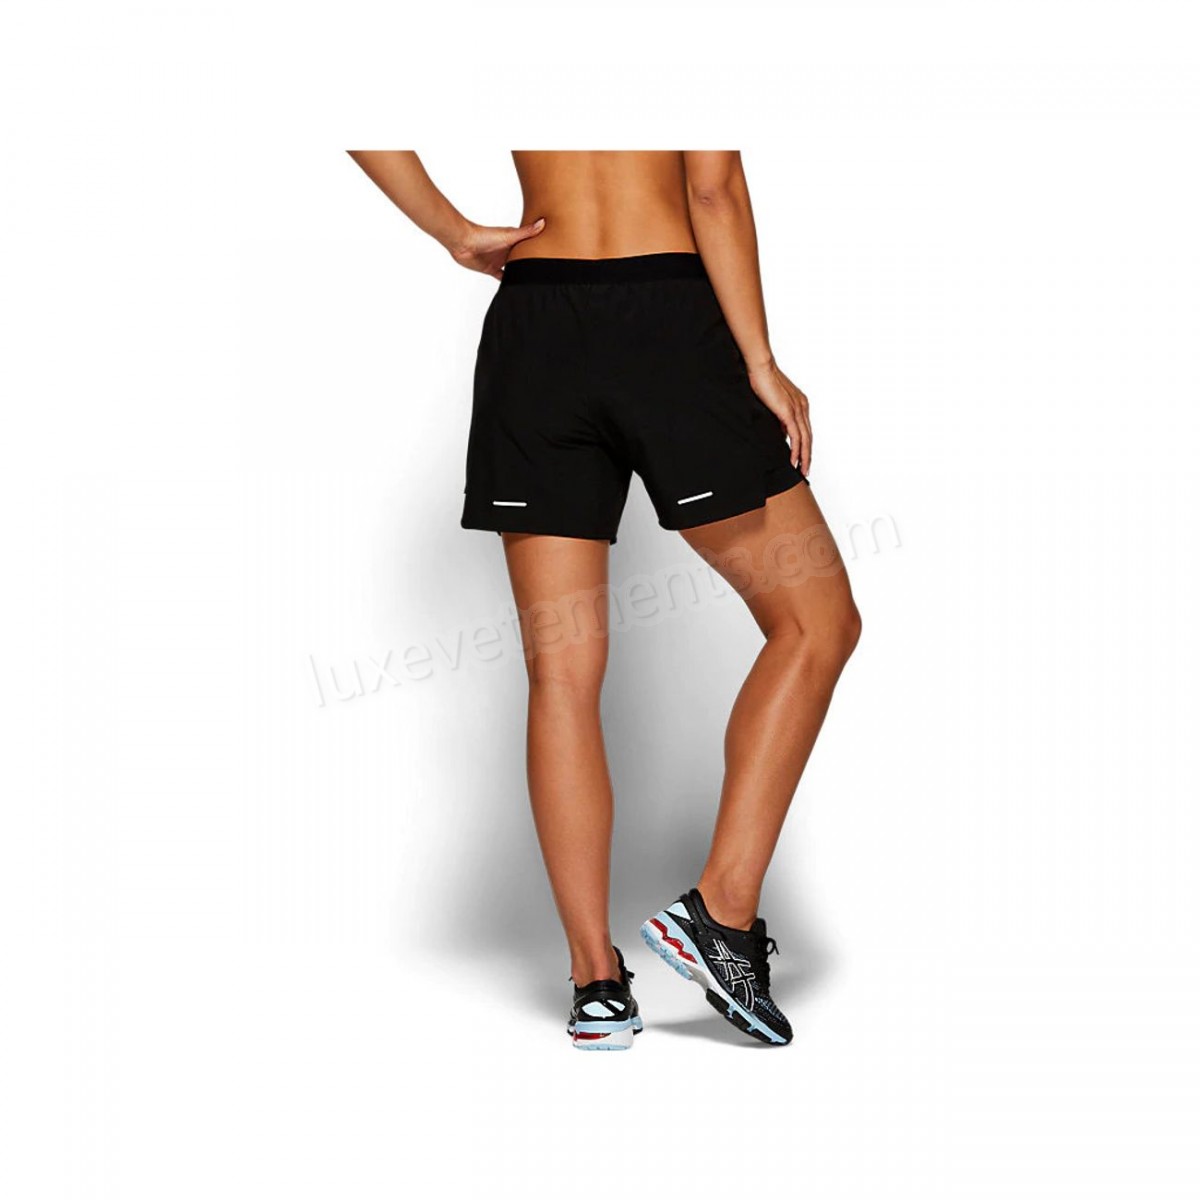 Asics-Fitness femme ASICS Short femme Asics 2 N 1 5.5in Vente en ligne - -2